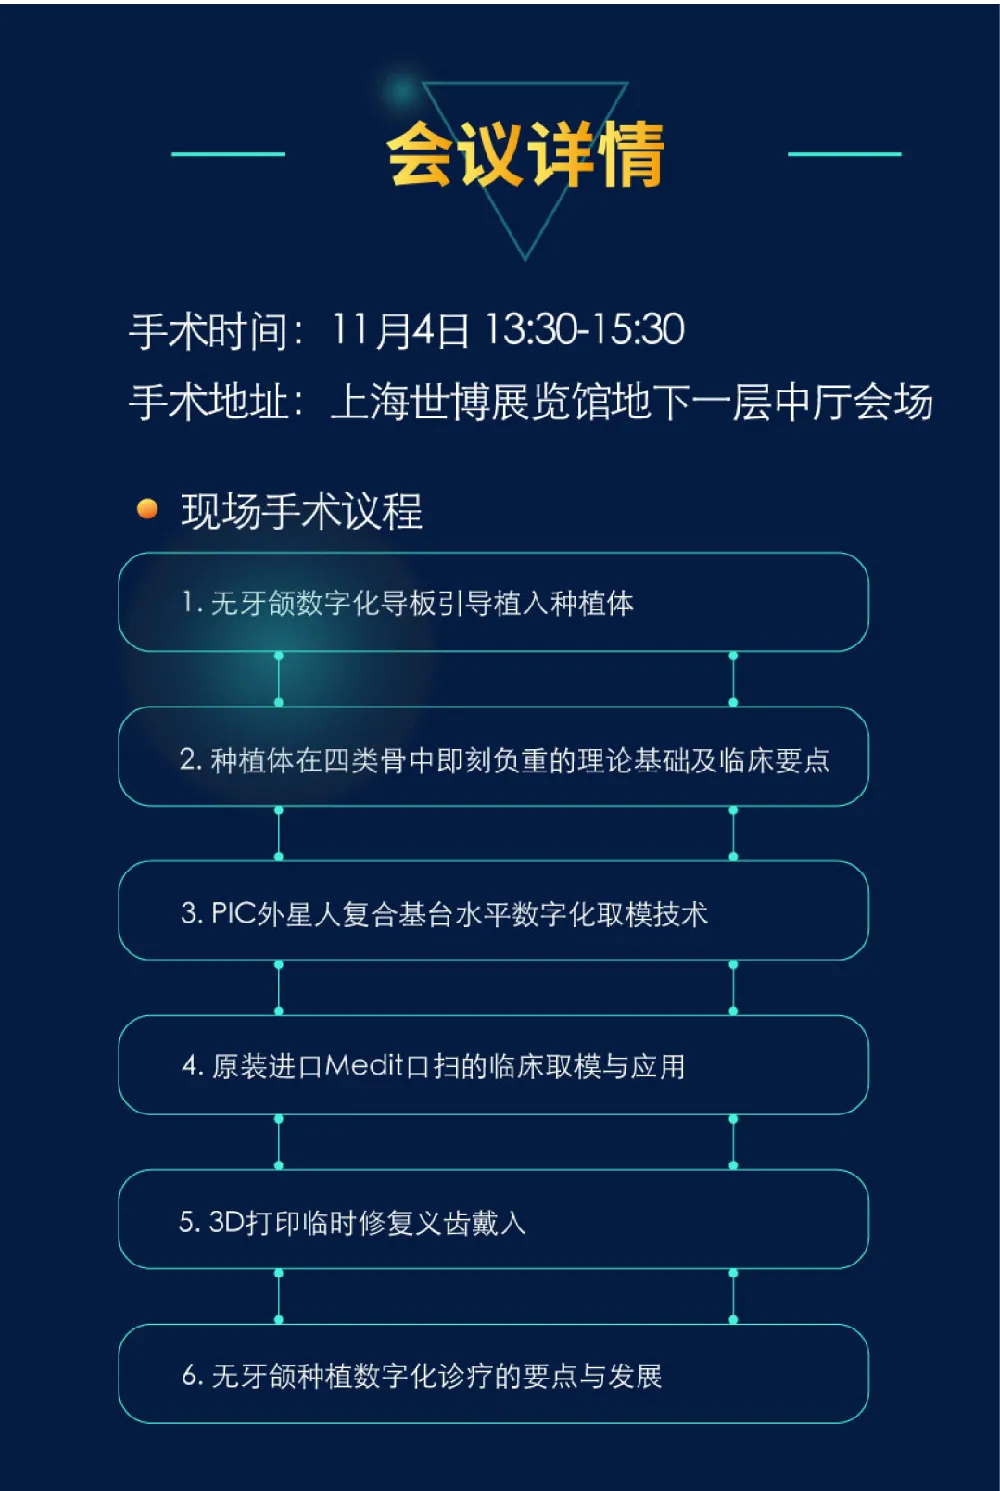 【展会资讯】DenTech上海展 美迪特现场种植手术直播